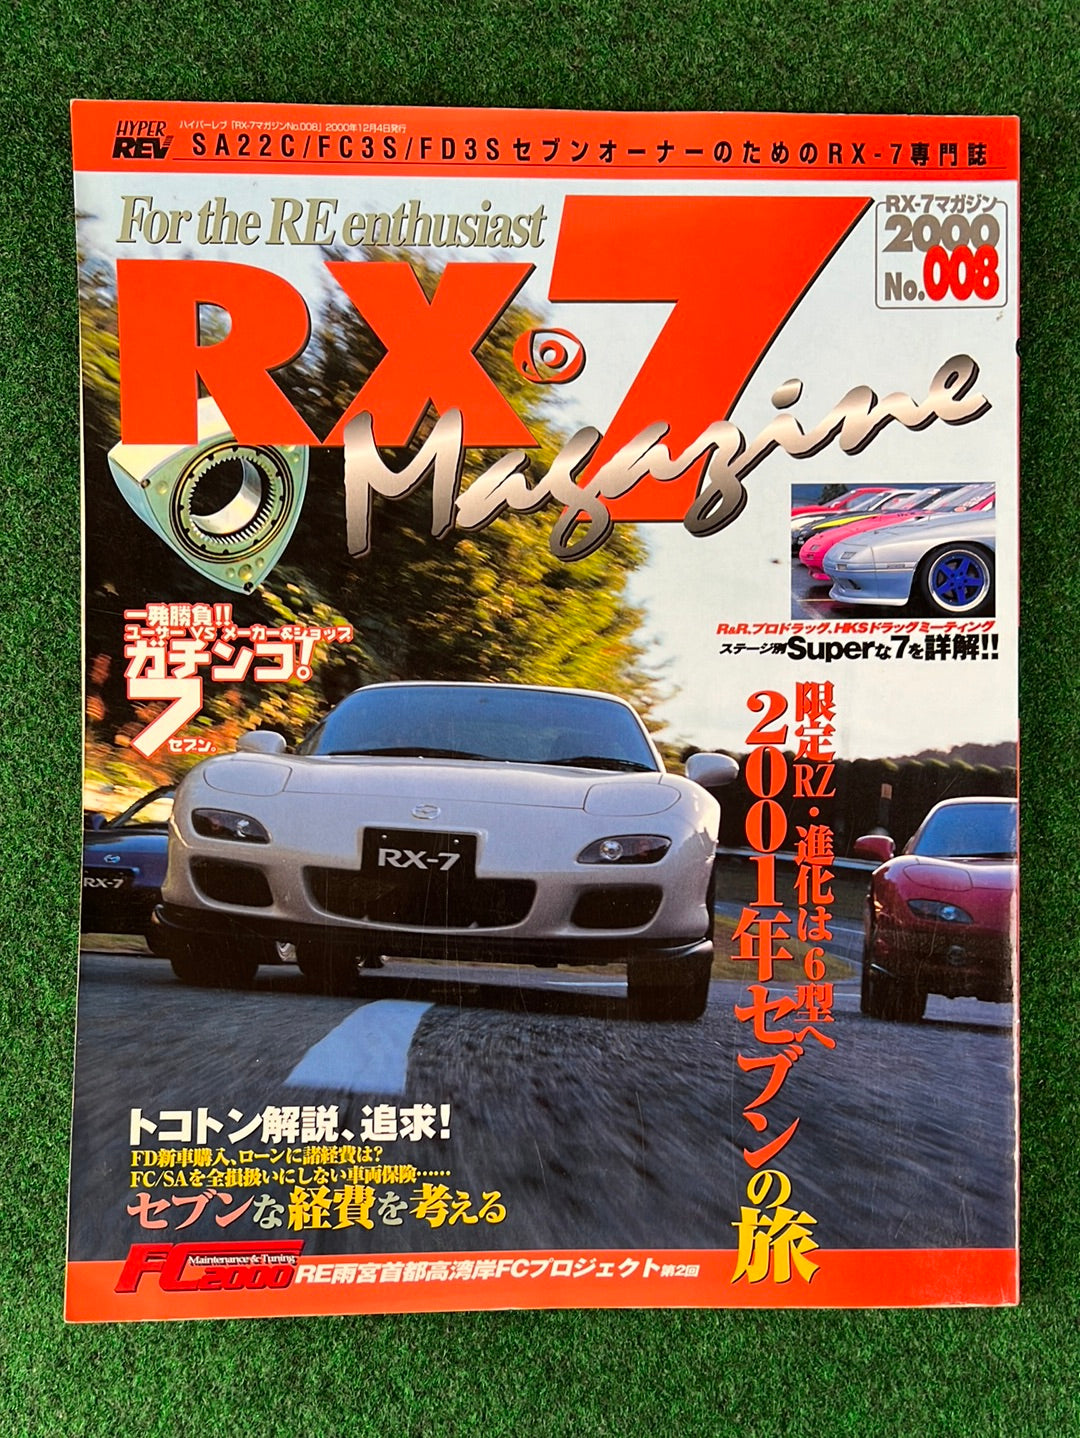 RX7 Magazine - No. 006 through No. 010